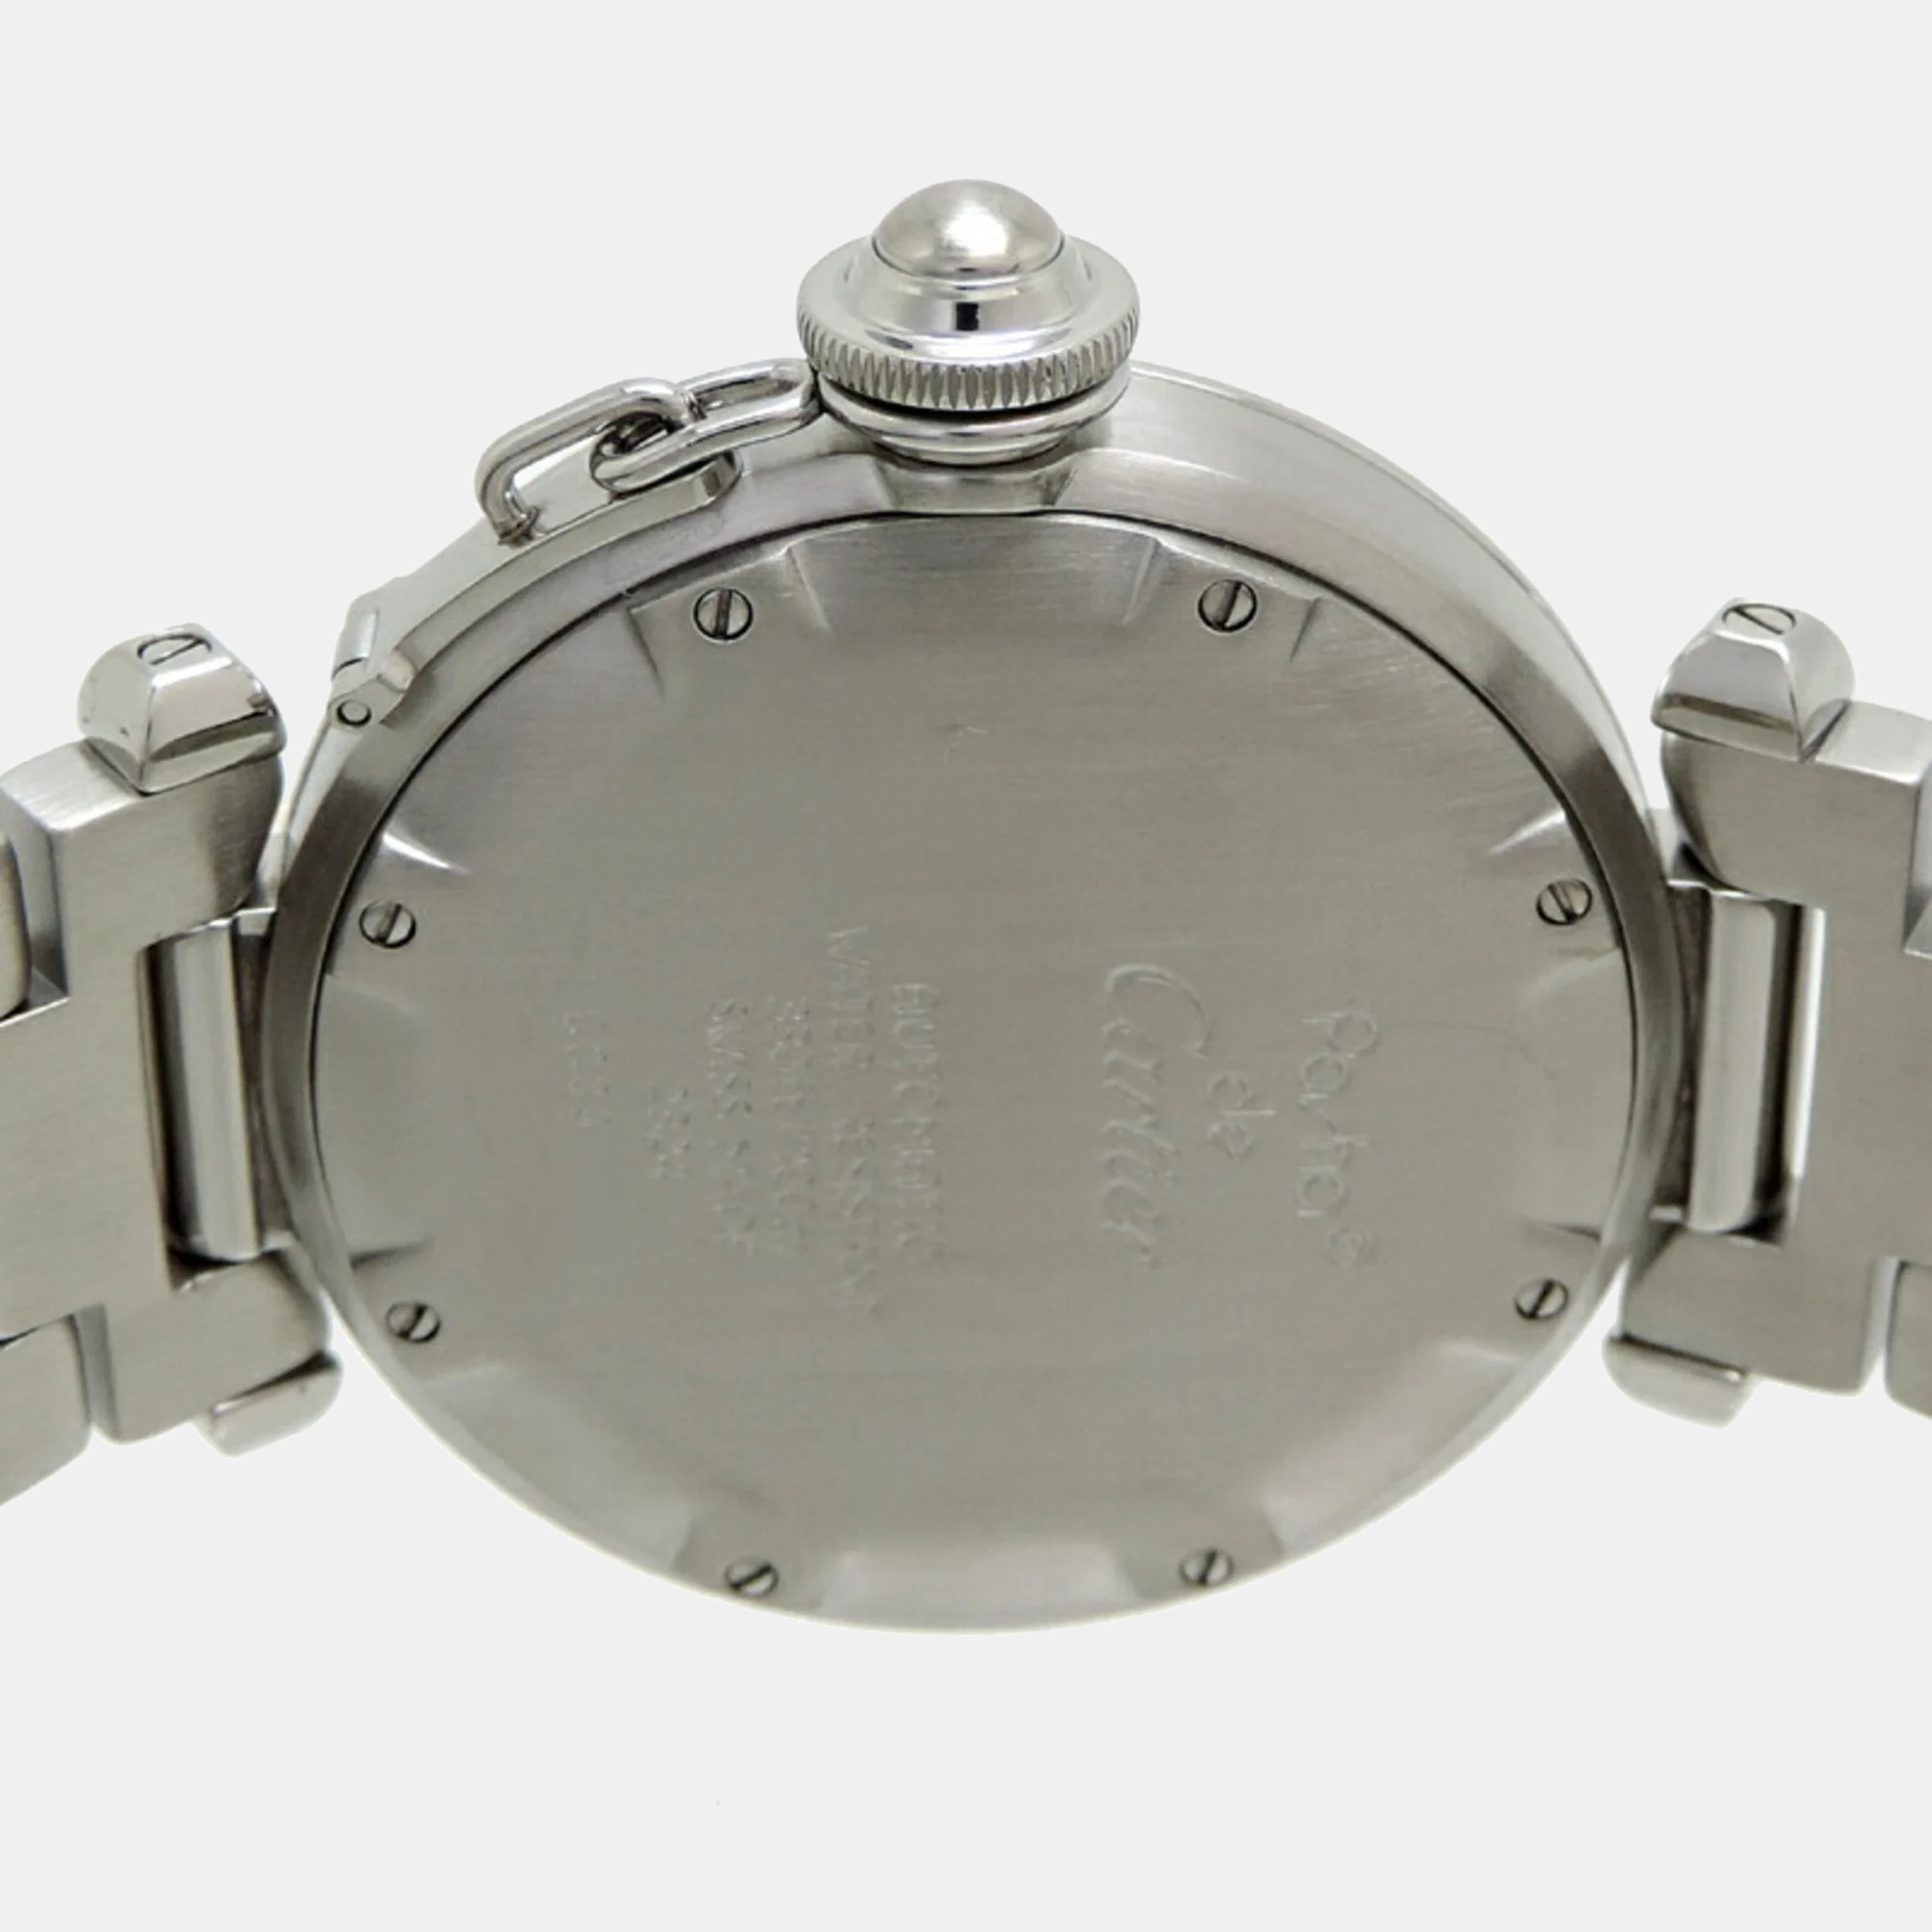 Cartier White Stainless Steel Pasha C De Cartier W31015M7 Automatic Men's Wristwatch 35 Mm